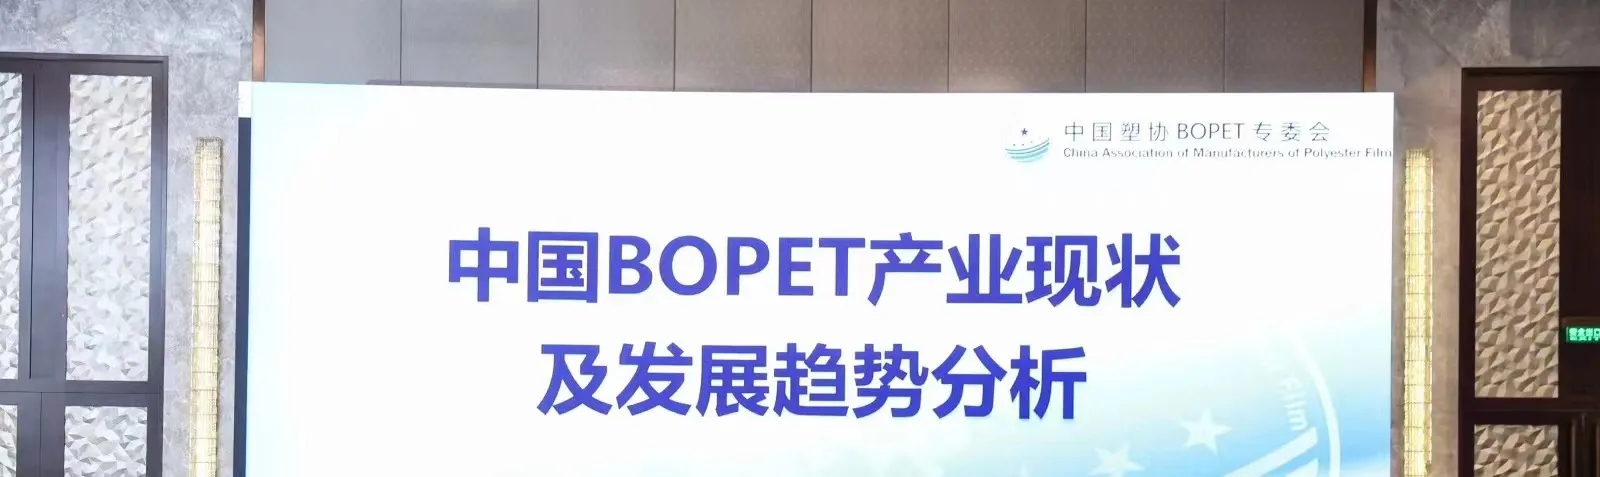 Конференция о текущей ситуации и тенденциях развития индустрии БОПЭТ в Китае.